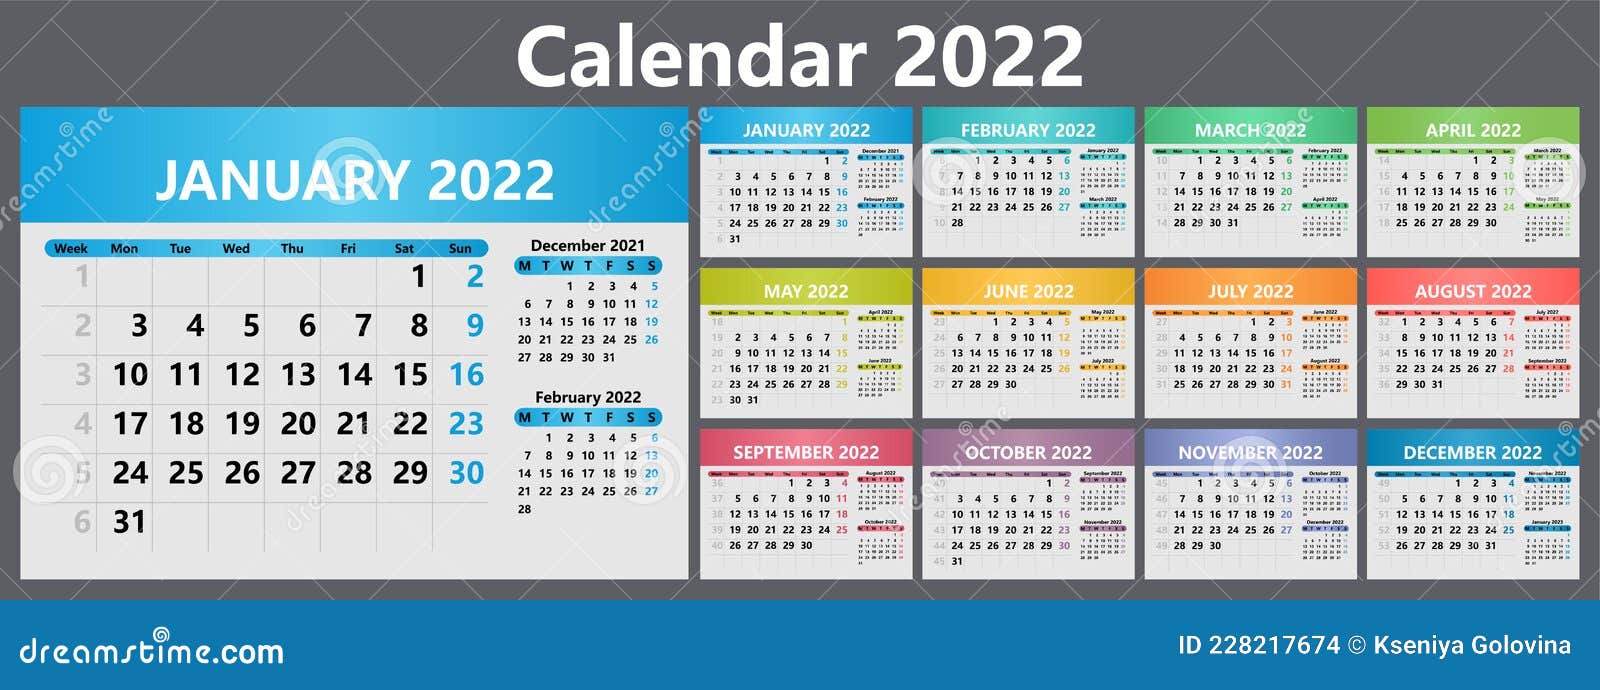 Calendar week 2022